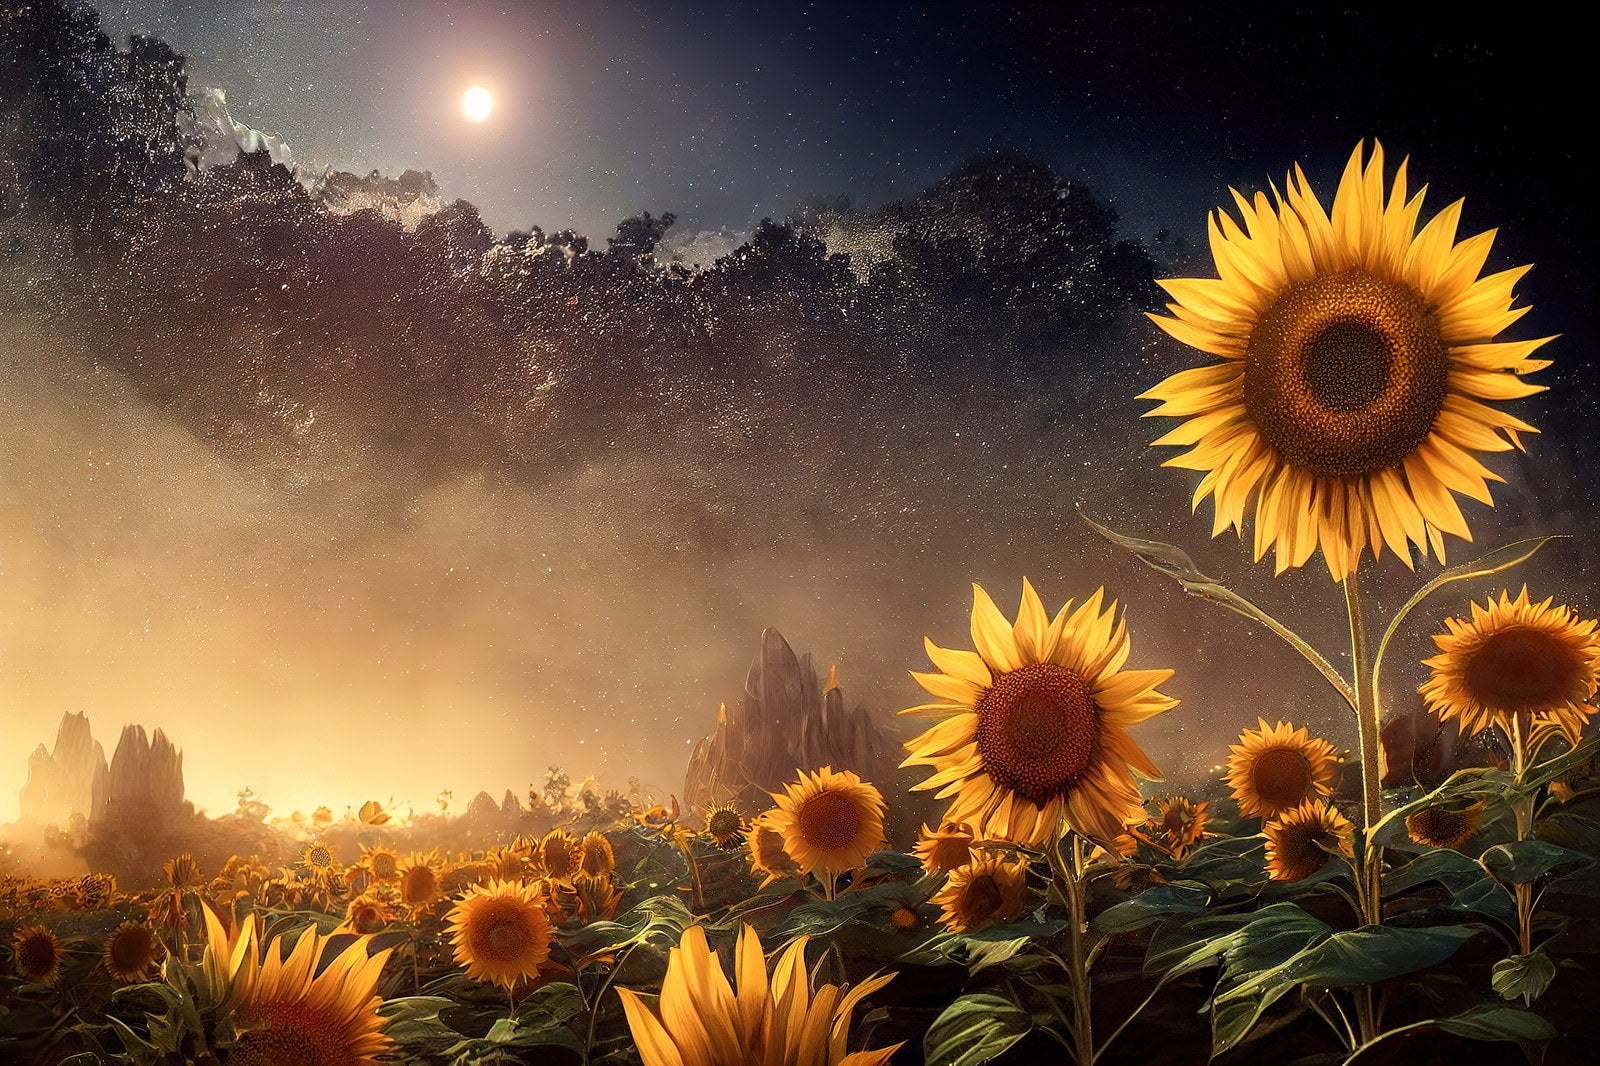 「夜空と向日葵」の写真